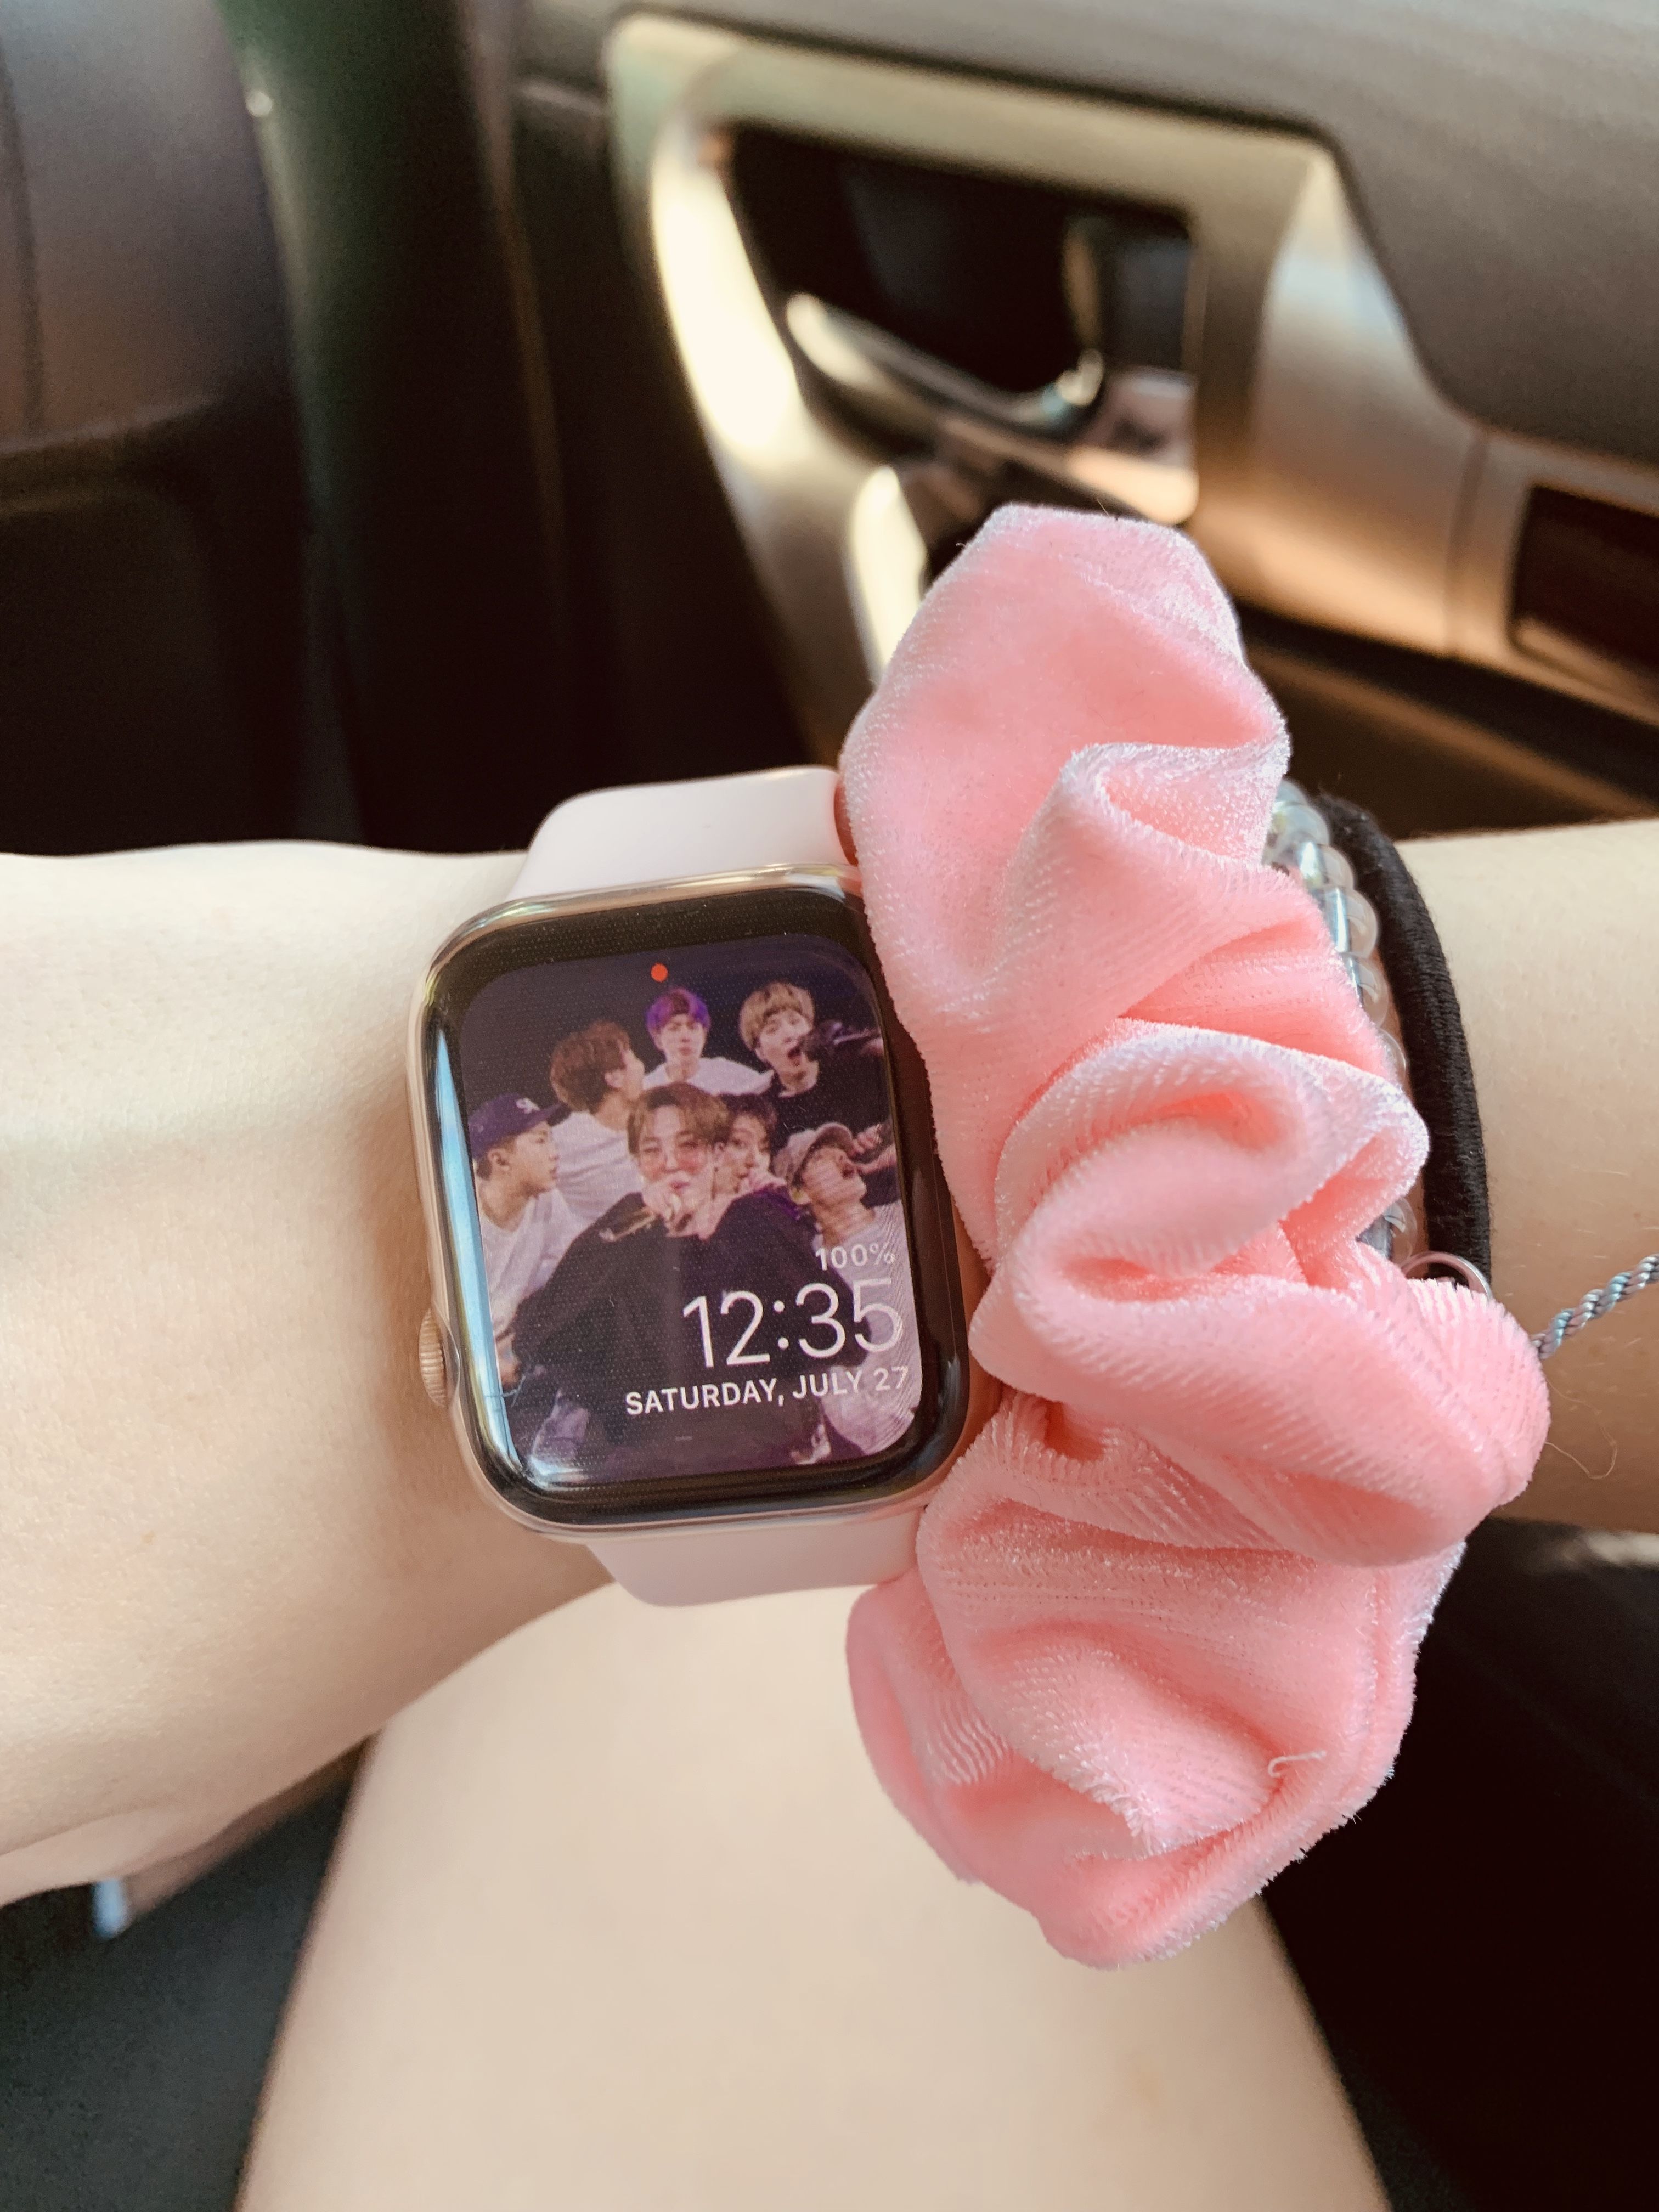 BTS Apple Watch Wallpaper. Apple watch wallpaper, Apple watch